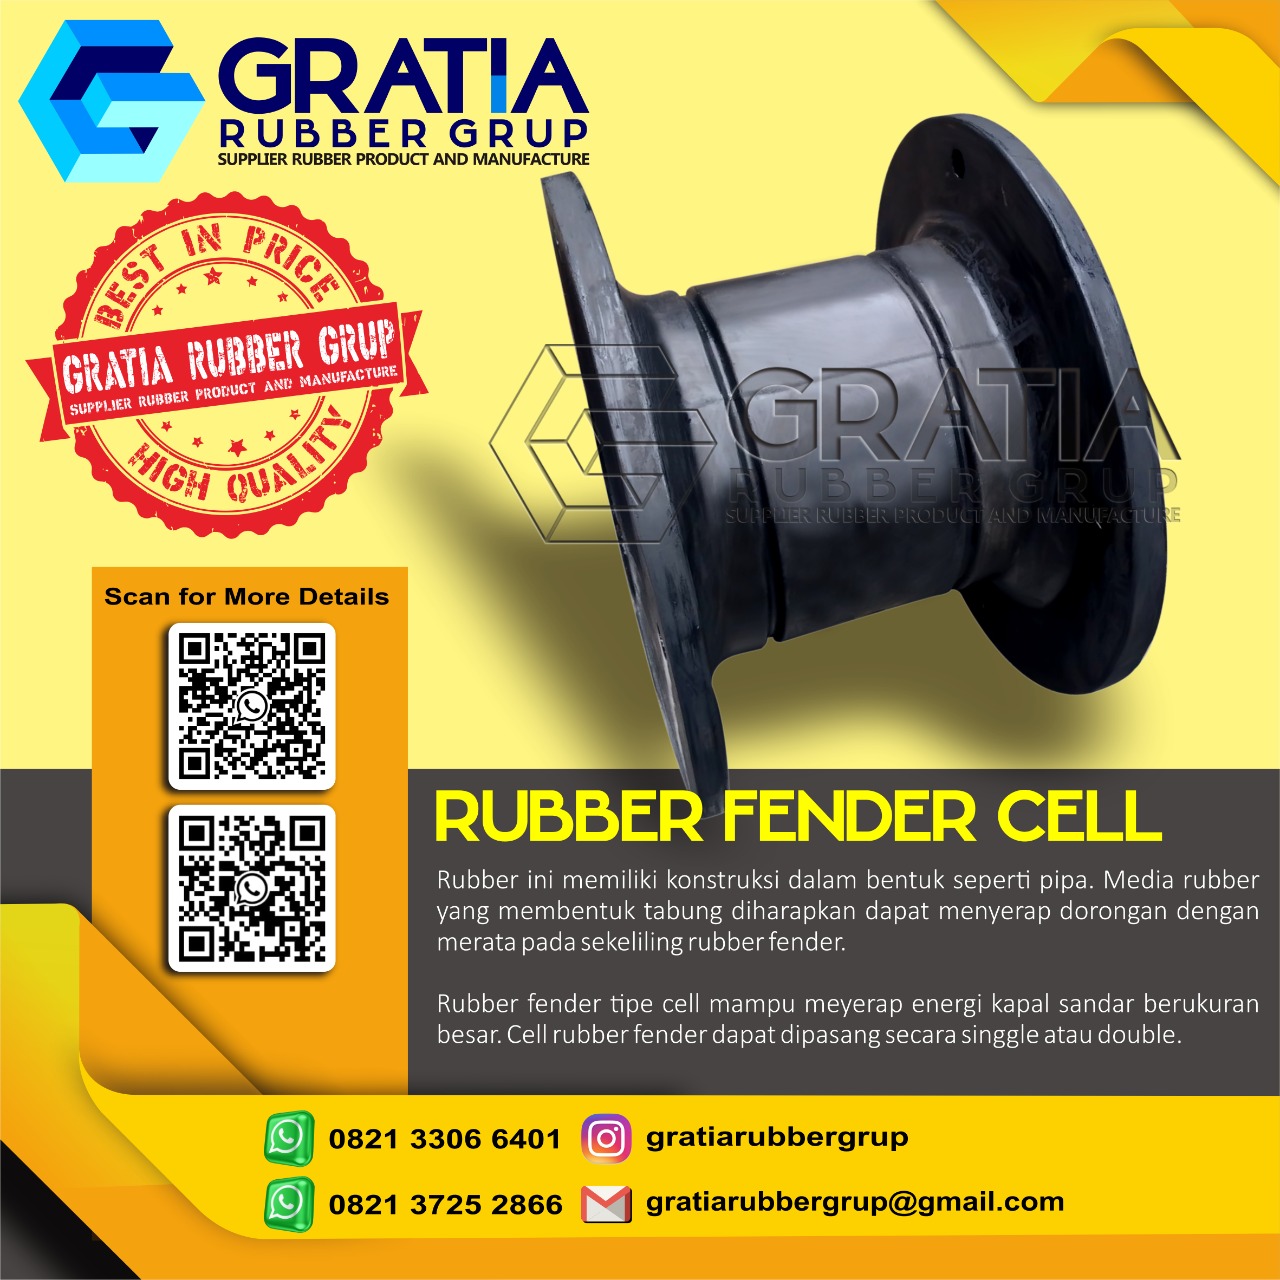 Distributor Rubber Fender Murah Dan Berkualitas  Melayani Pengiriman Ke Palembang Sumatera Selatan Hub 0821 3306 0461